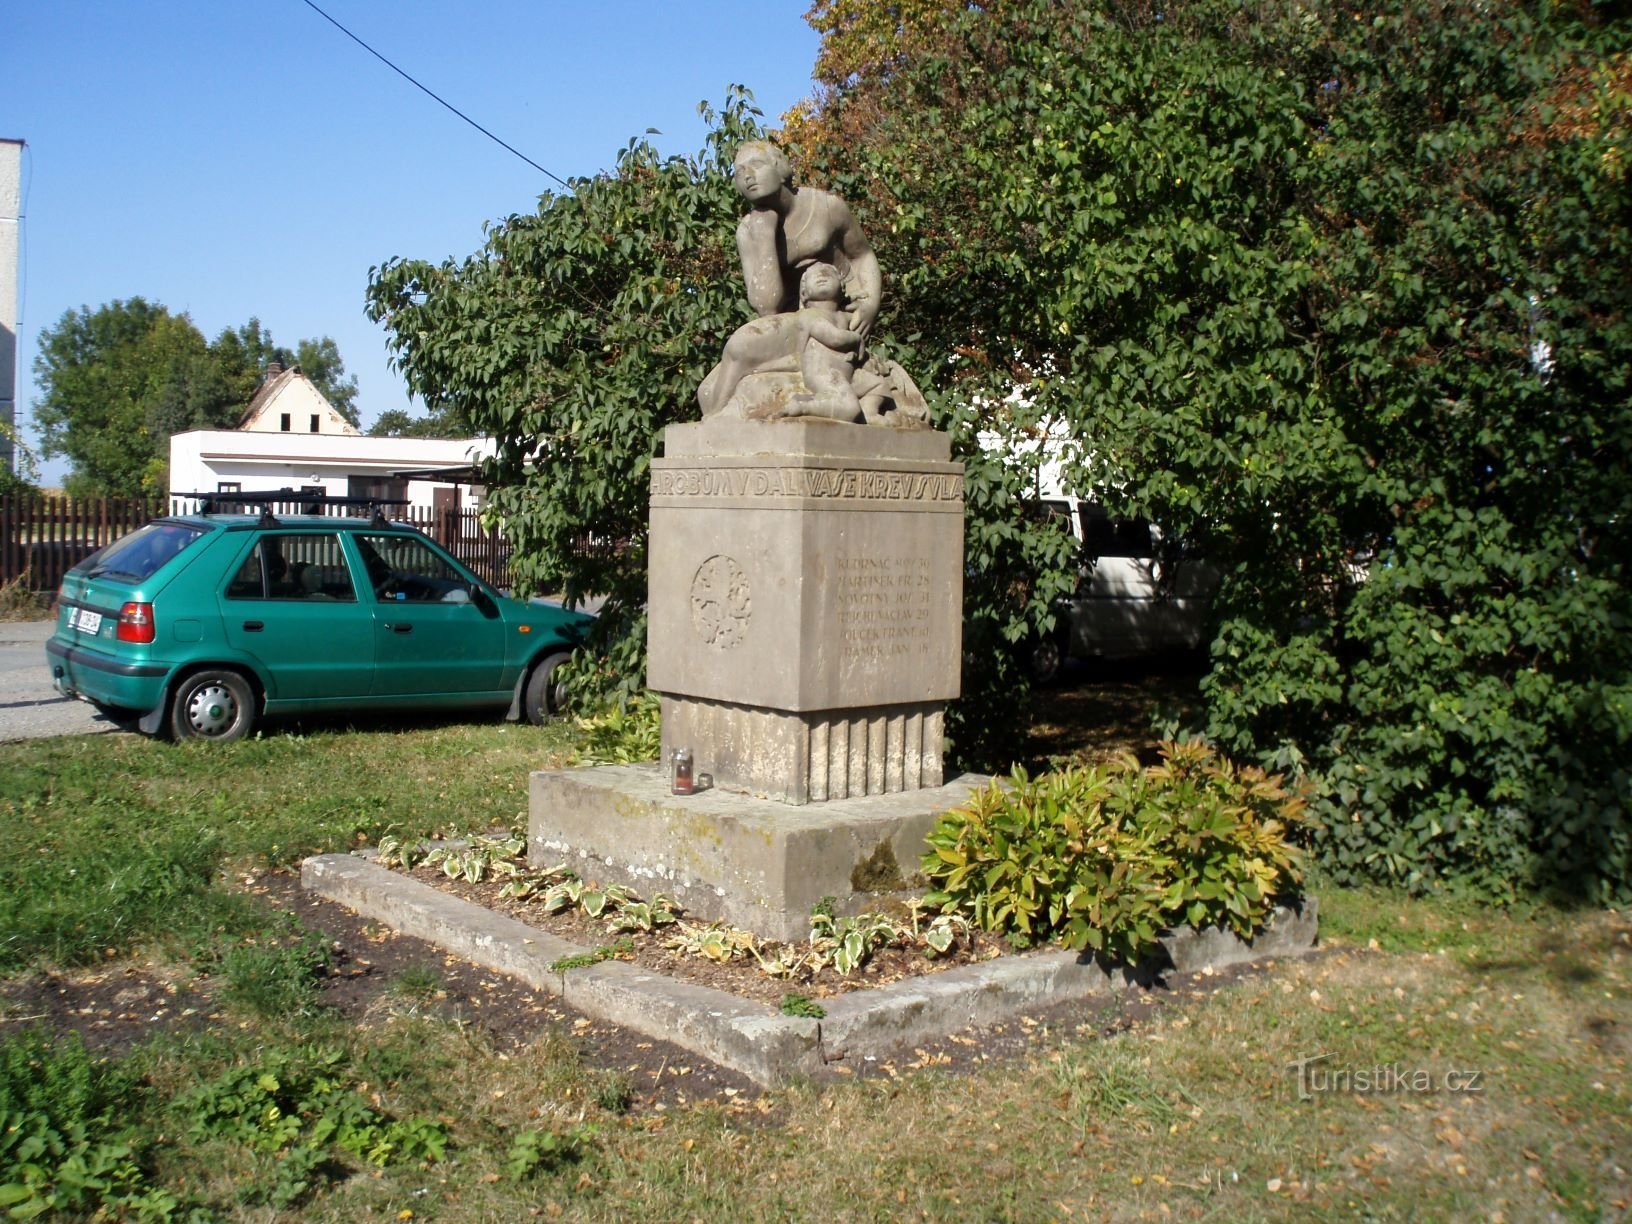 ピレティツェの第一次世界大戦で亡くなった人々の記念碑 (Hradec Králové、1 年 26.9.2009 月 XNUMX 日)